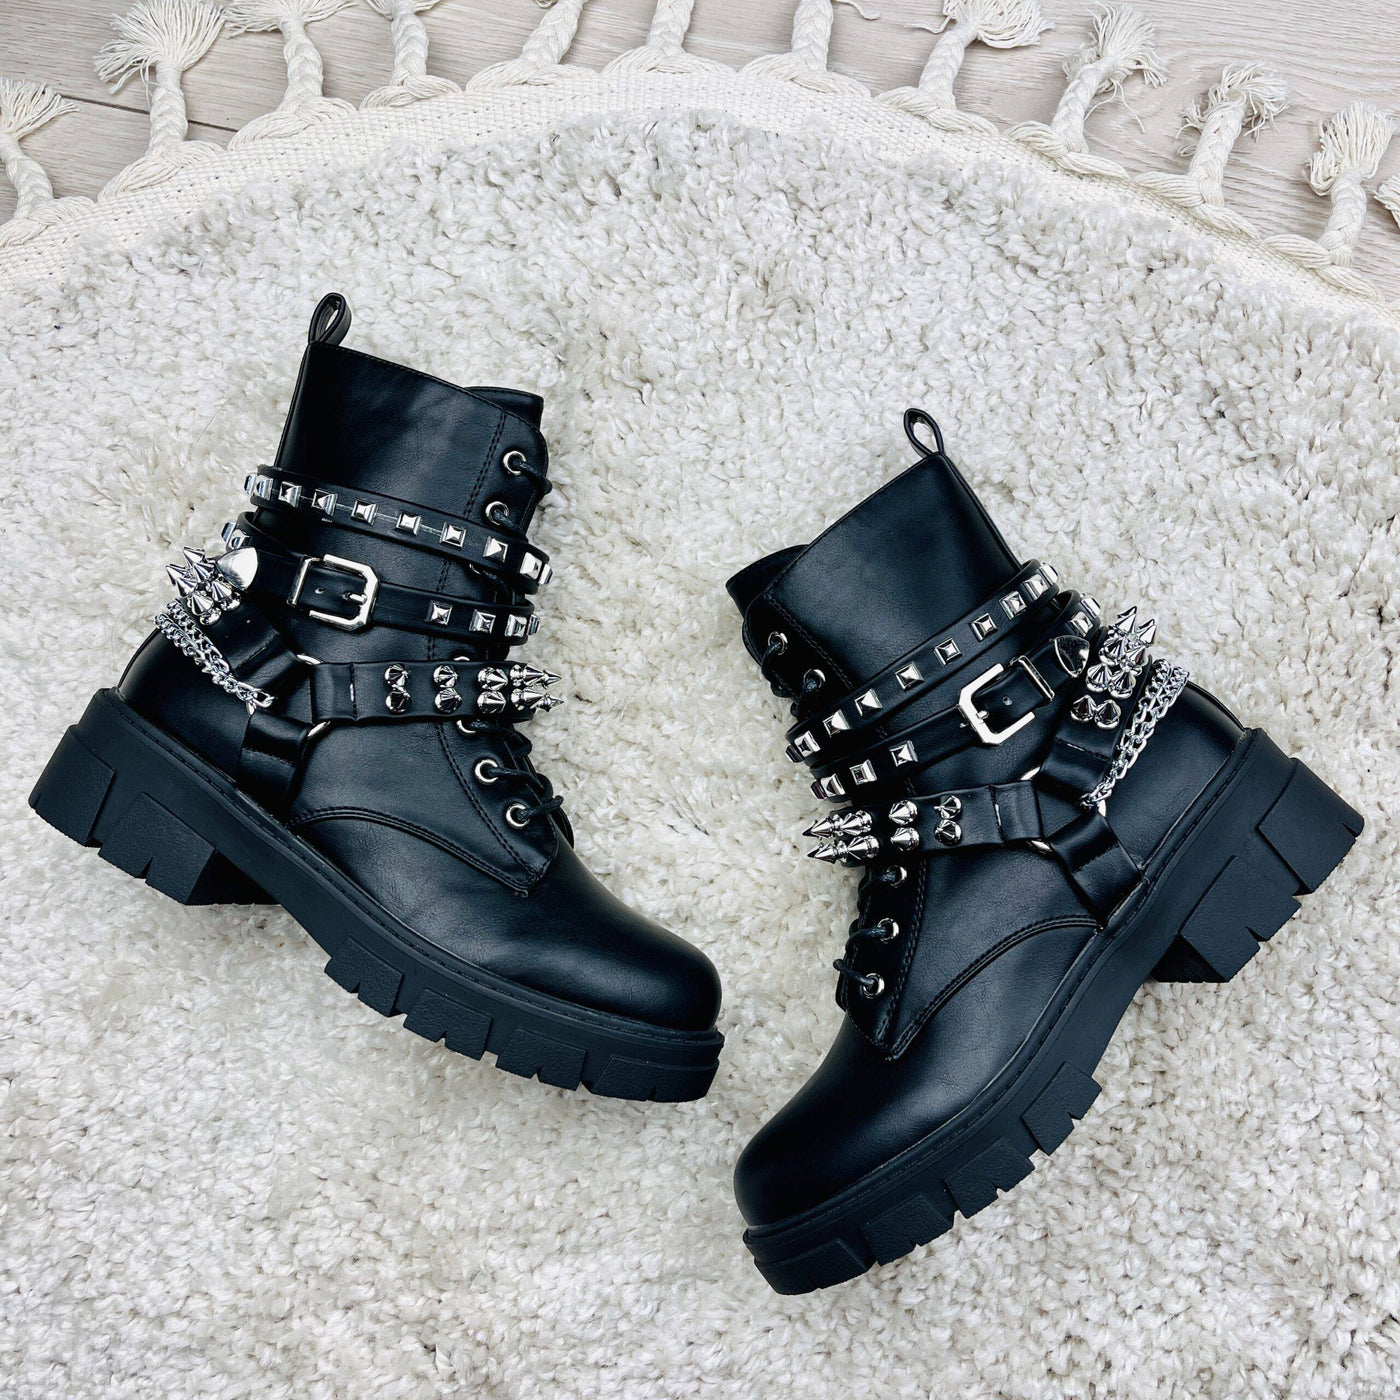 Premium Black boots